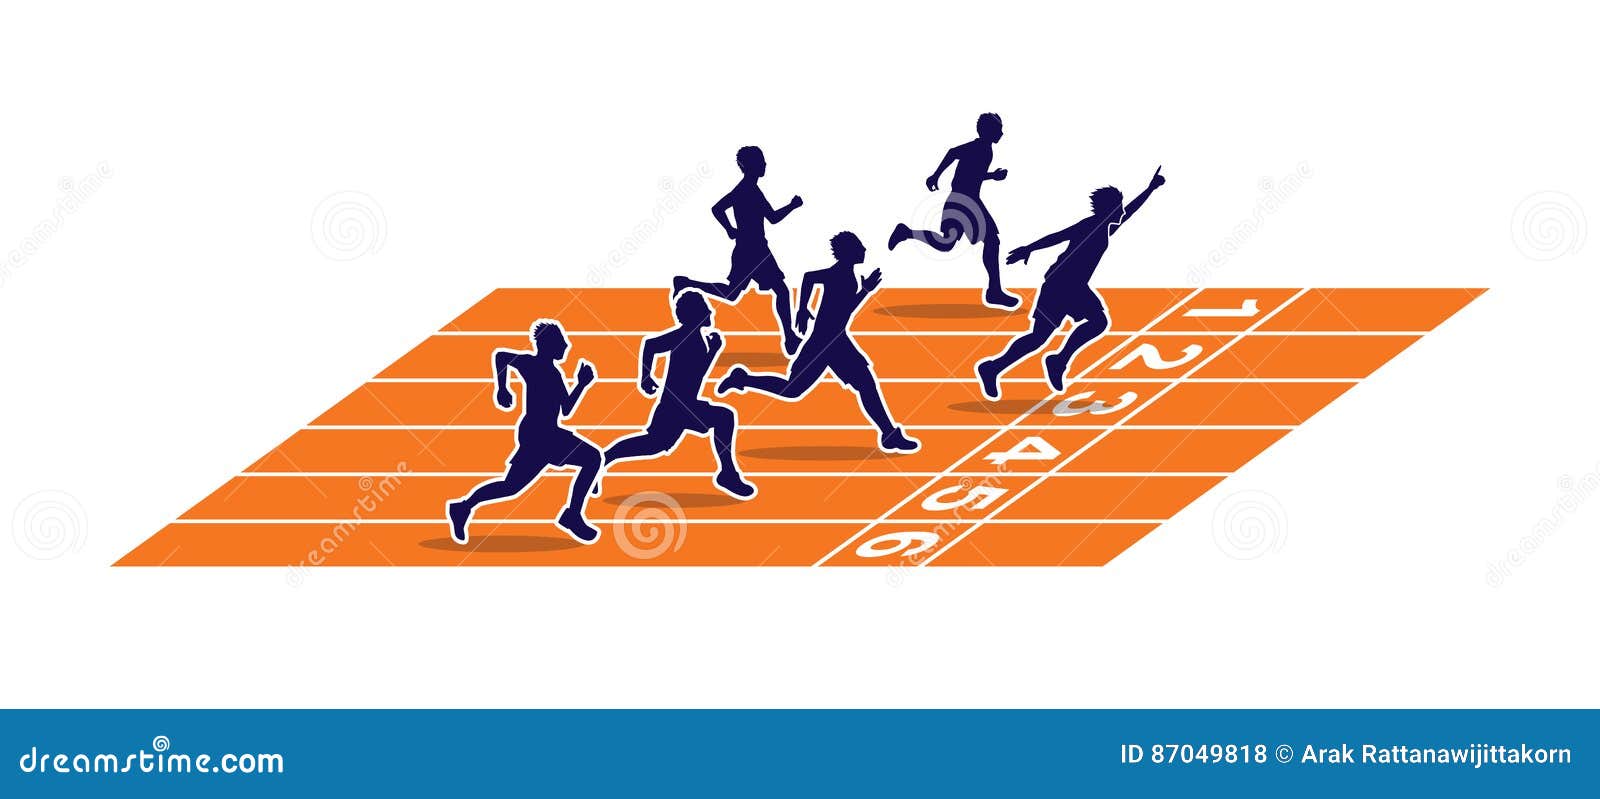 Running Track Cartoon Stock Illustrations – 2,664 Running Track Cartoon  Stock Illustrations, Vectors & Clipart - Dreamstime